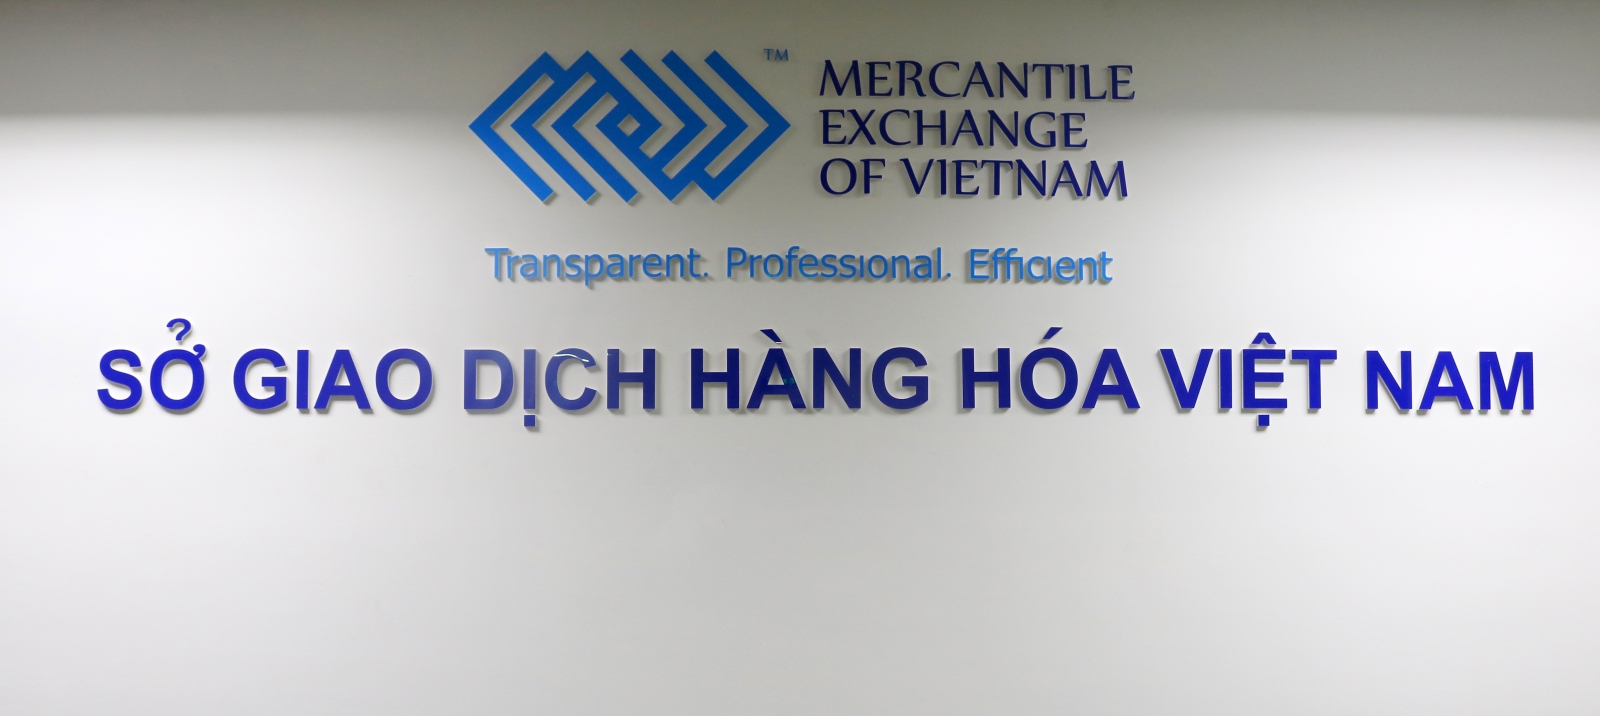 Công ty Cổ phần Giao dịch Hàng hóa Sài Gòn – Mêkong là Thành viên Kinh doanh mới của Sở Giao dịch Hàng hóa Việt Nam